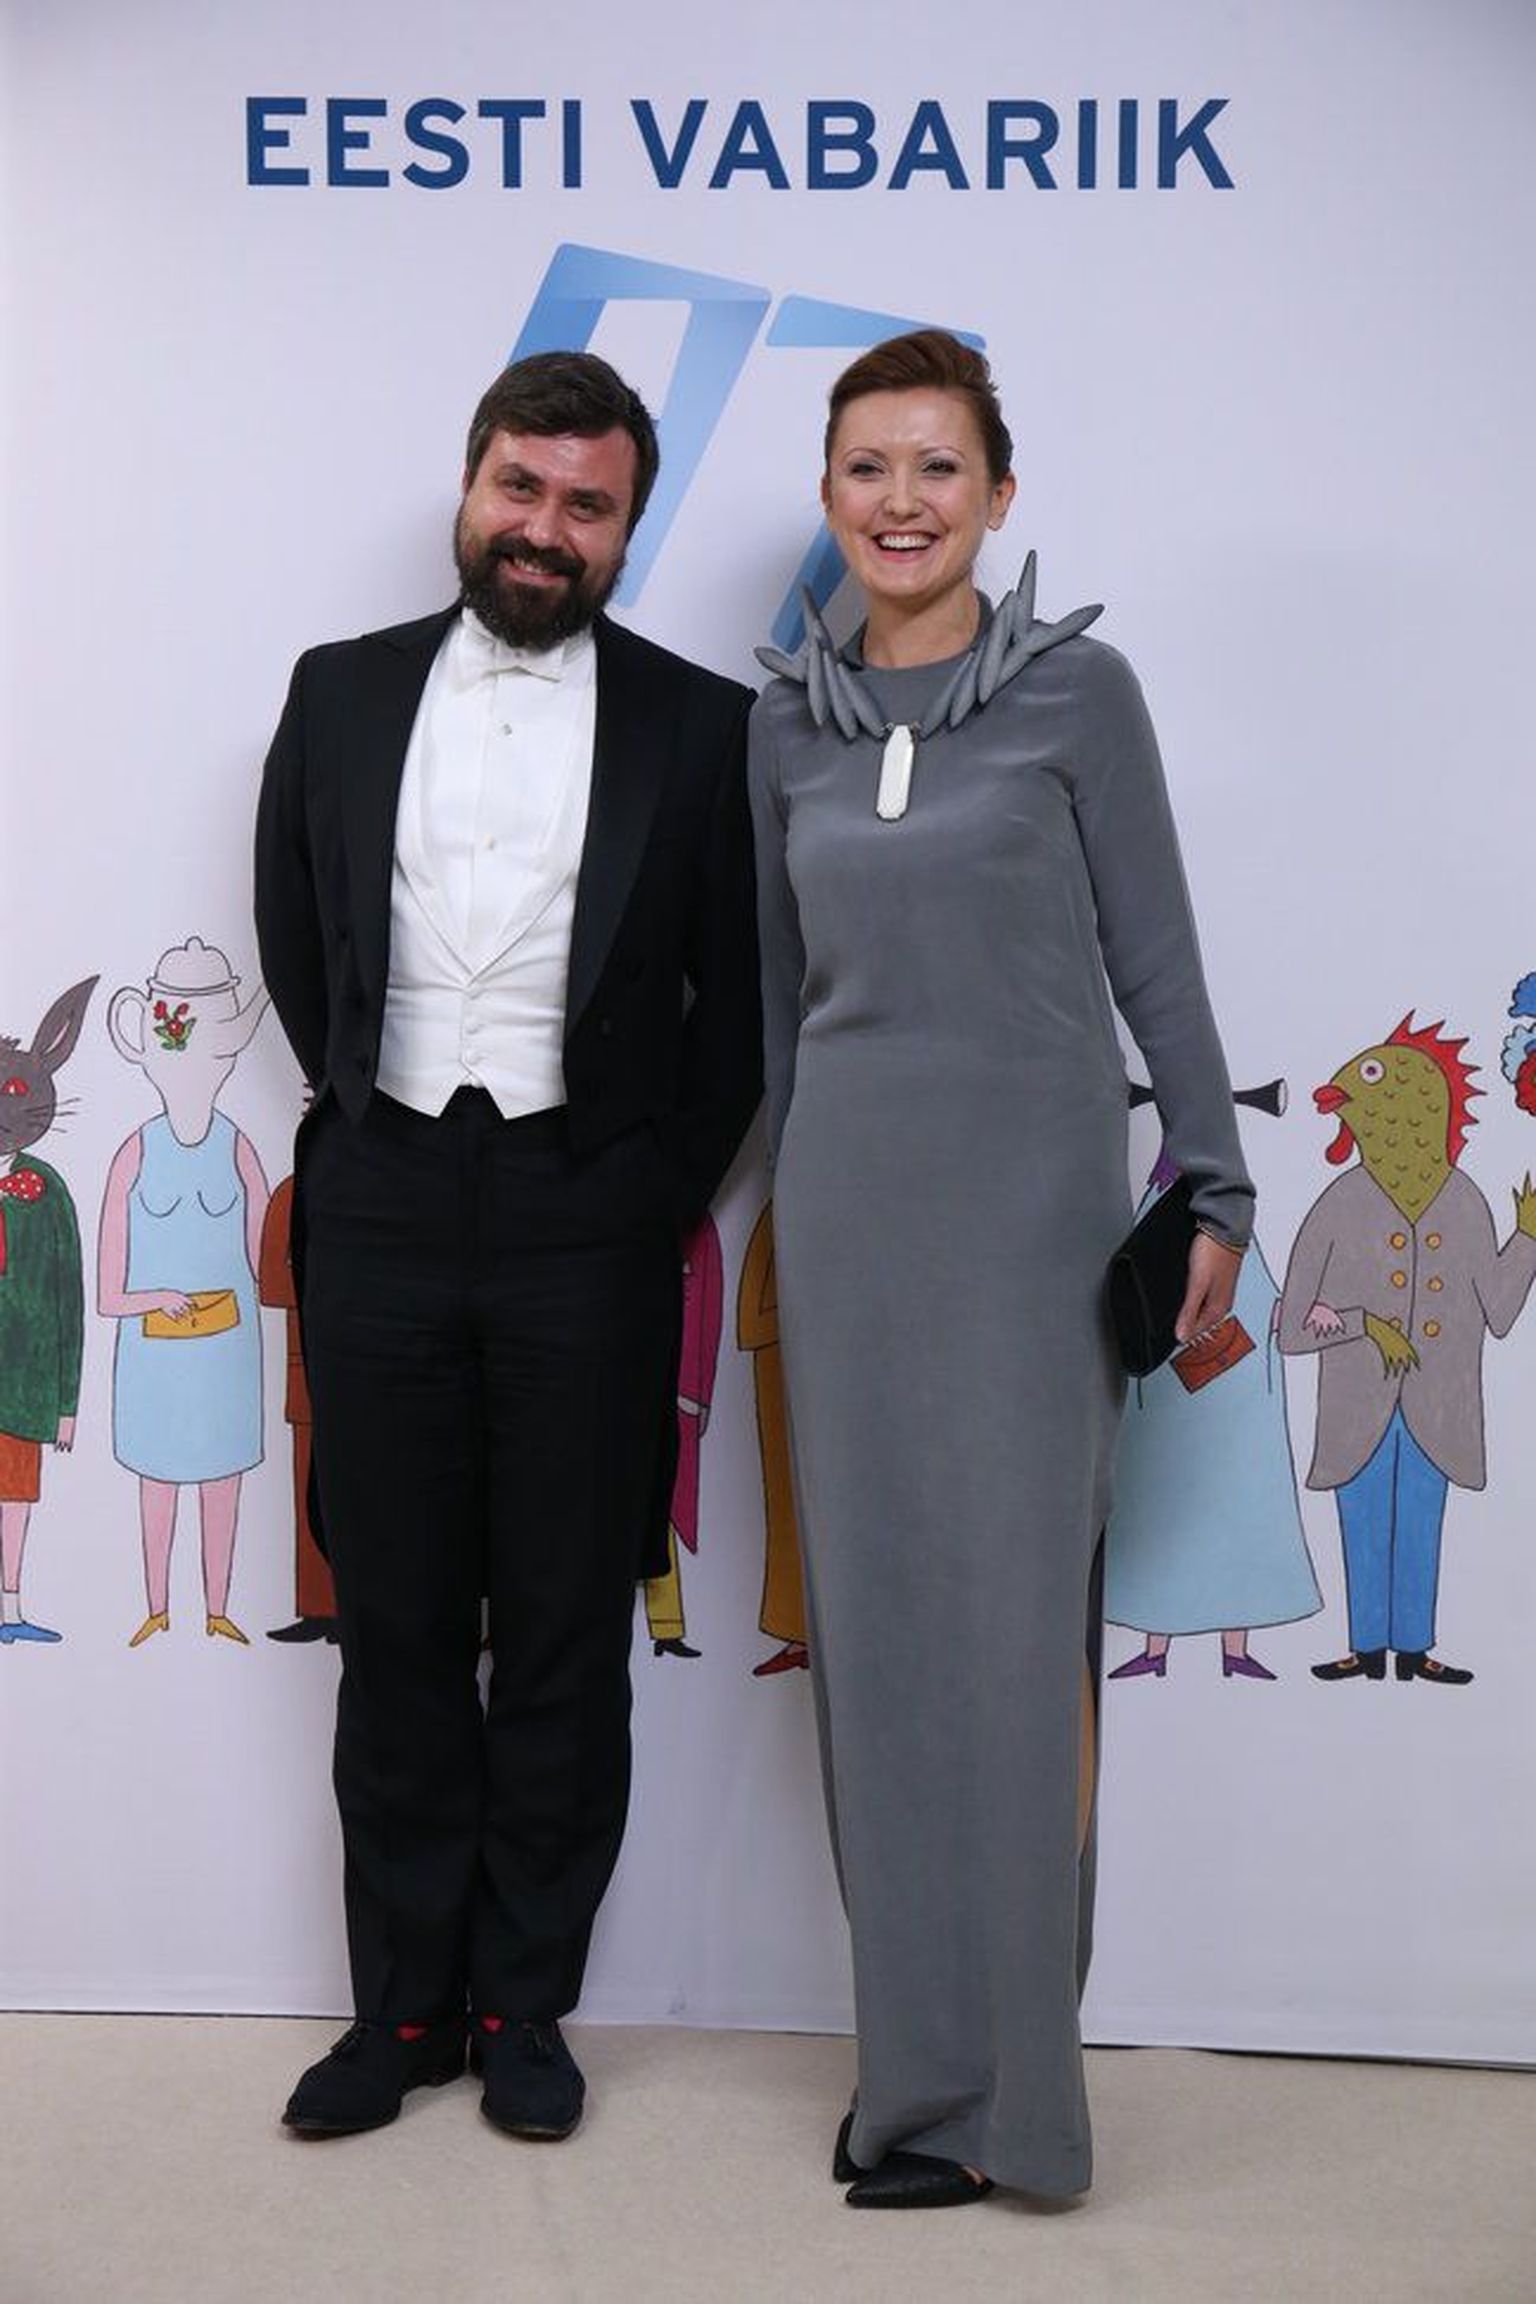 Presidendi noore kultuuritegelase eripreemia laureaat, galerist Olga Temnikova ja metseen, ettevõtja Indrek Kasela